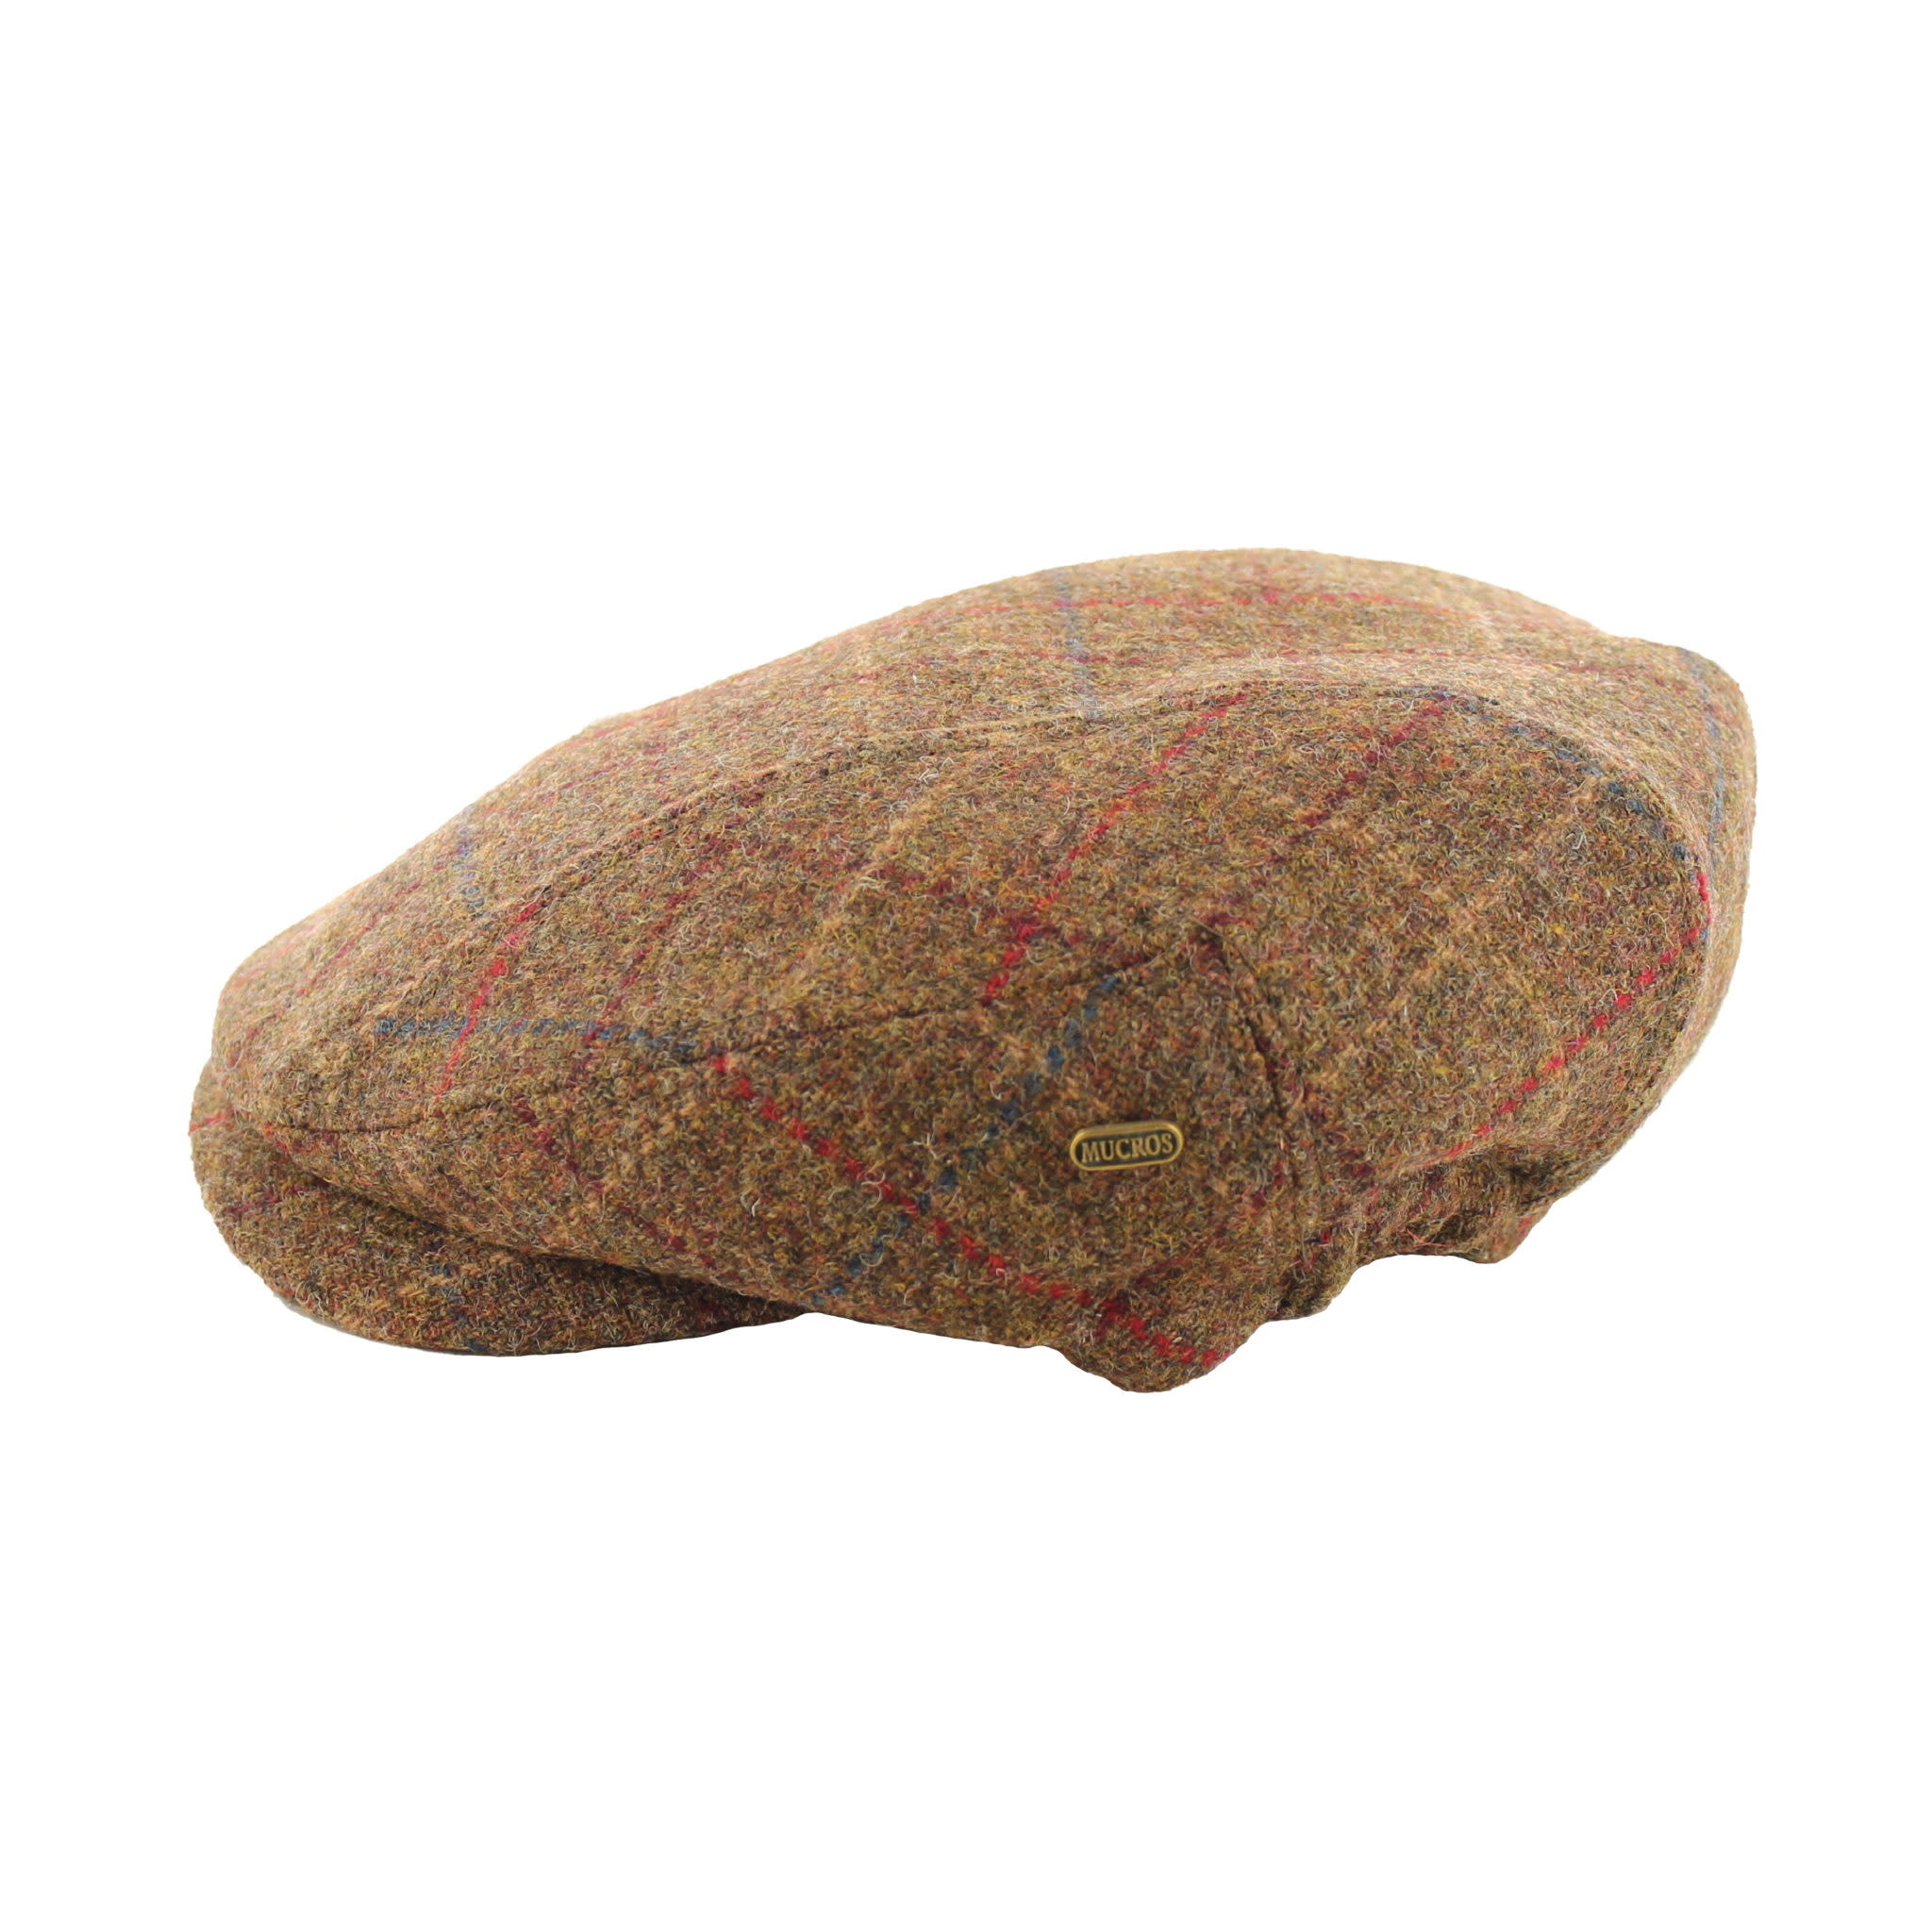 Mucros Weavers Hat: Kerry Cap, Brown, Color Grid, Tweed